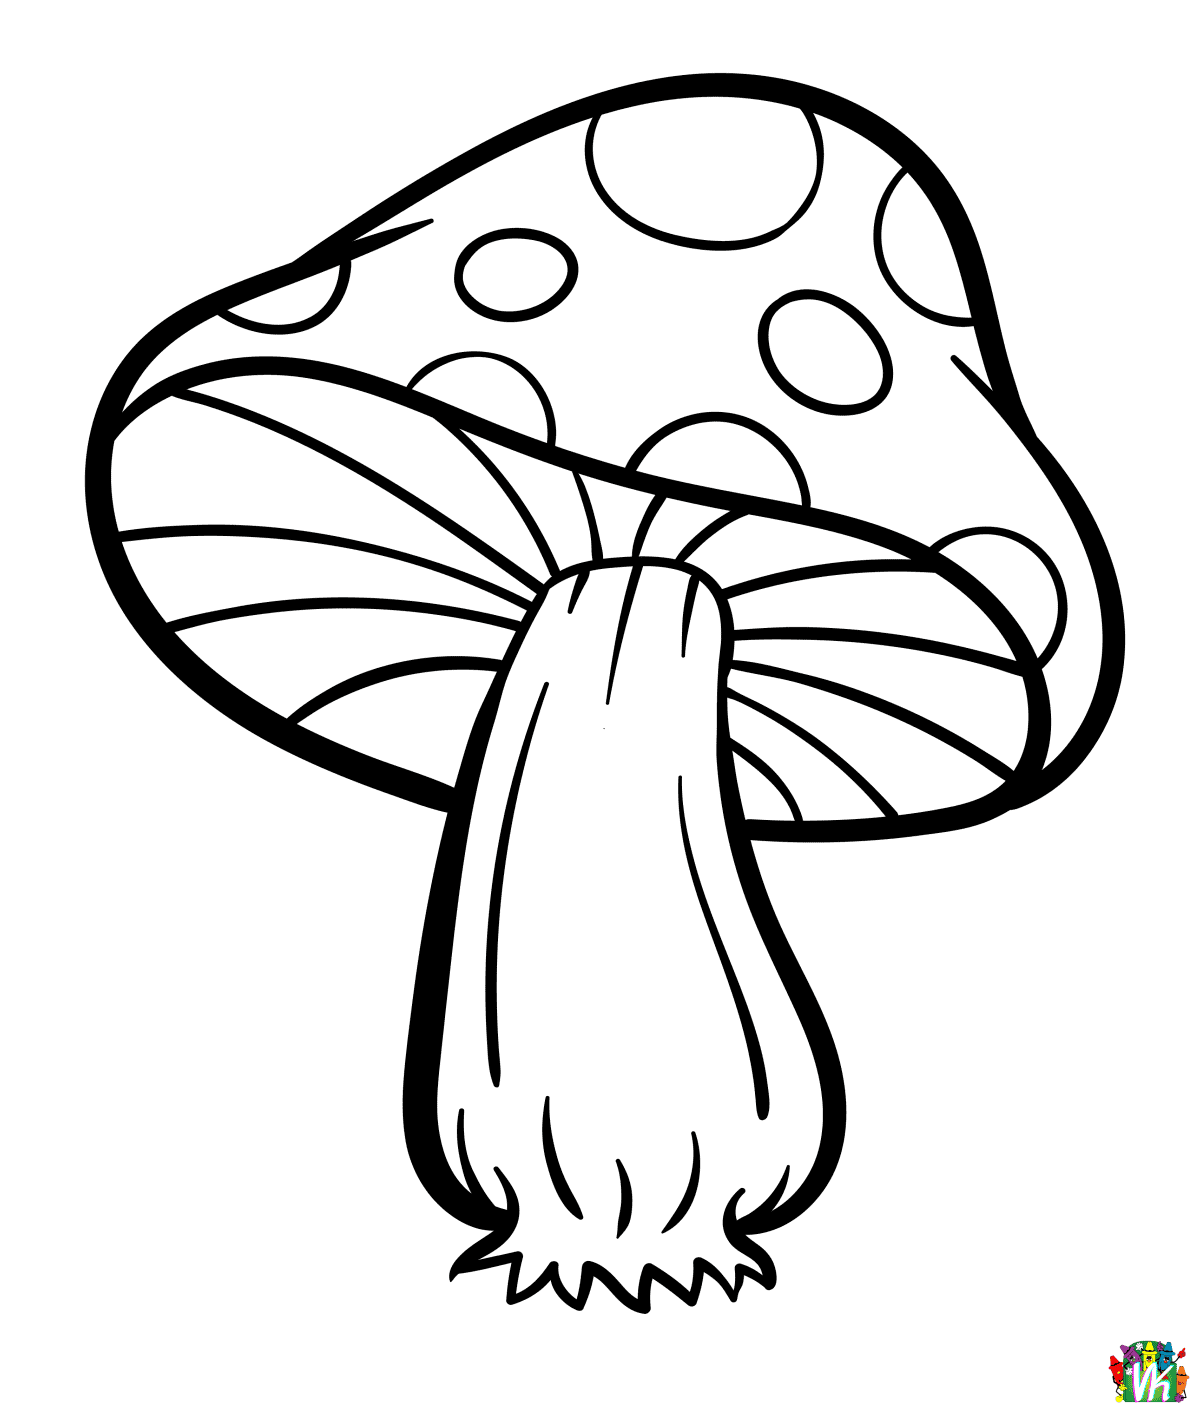 sieni-varityskuvat (14)